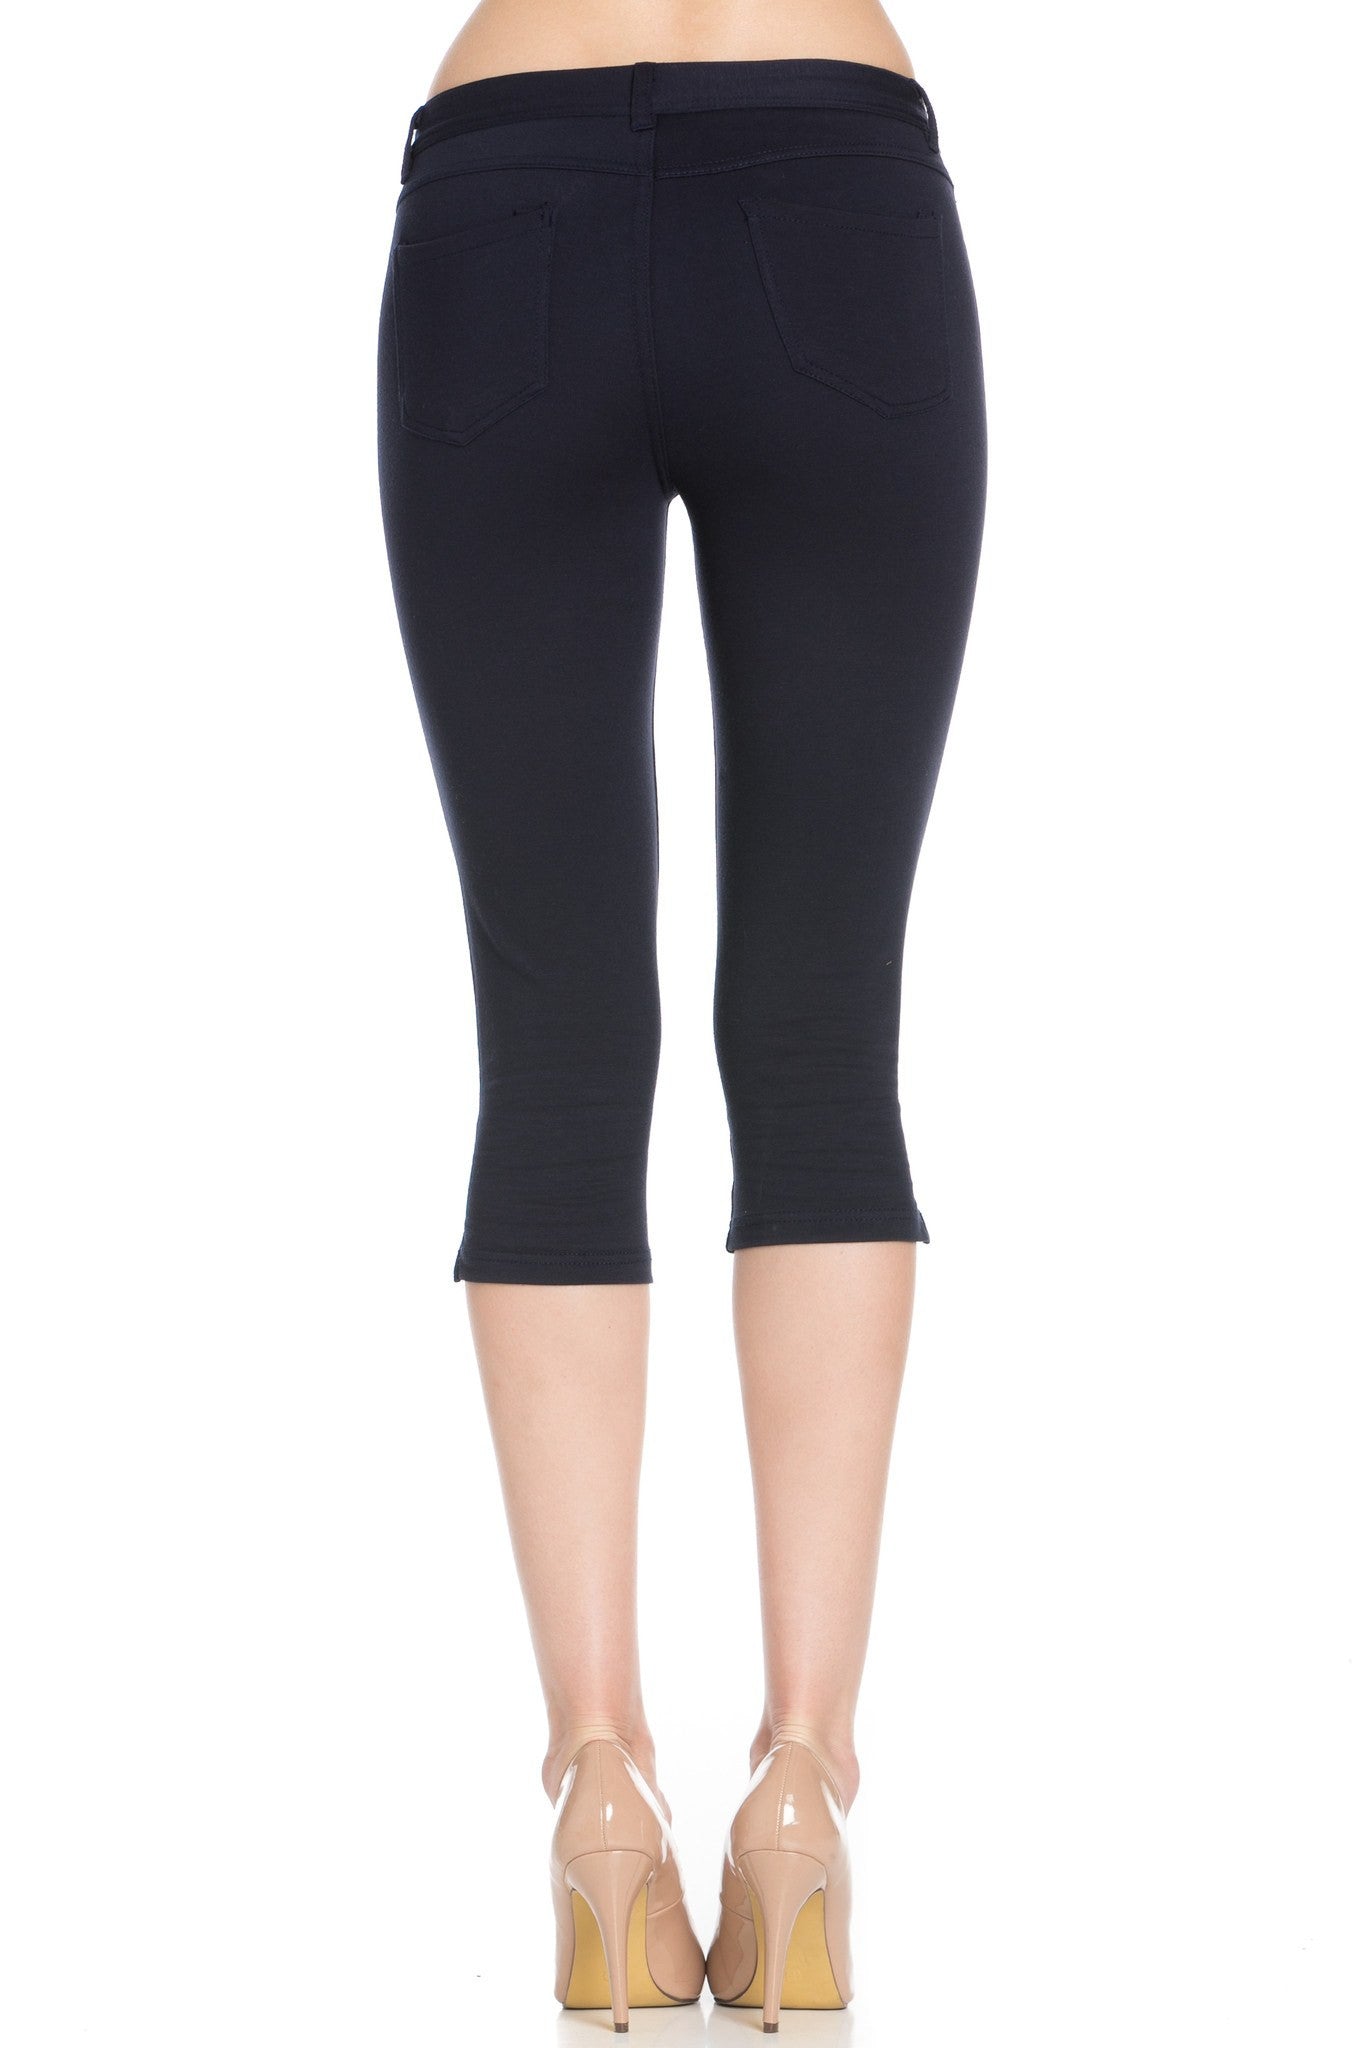 Poplooks Women's 4 Way Stretchy Ponte Knit Capri Skinny Jeans (Navy)